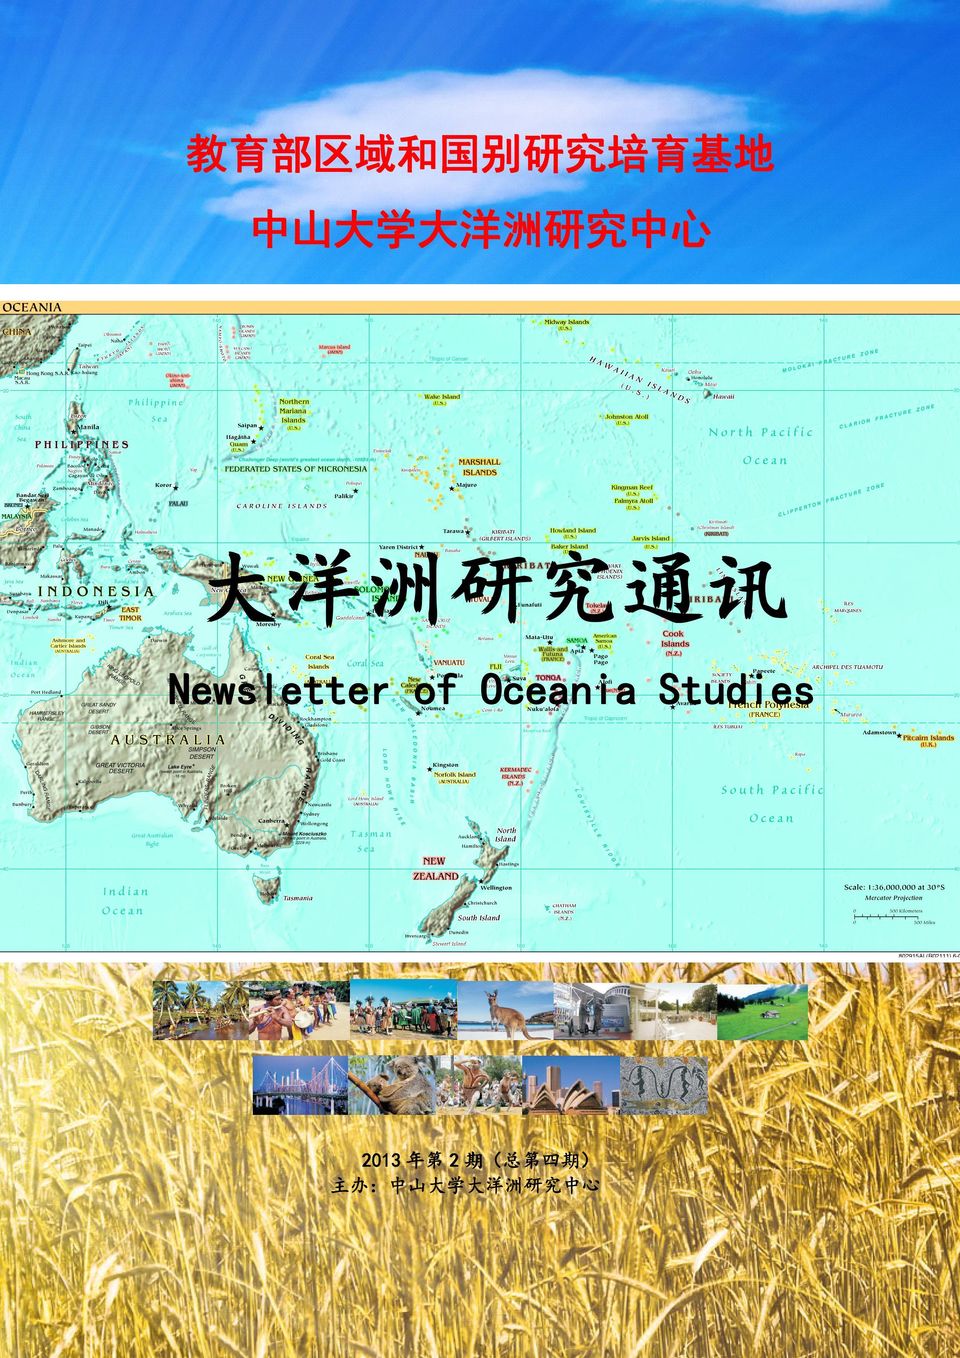 Newsletter of Oceania